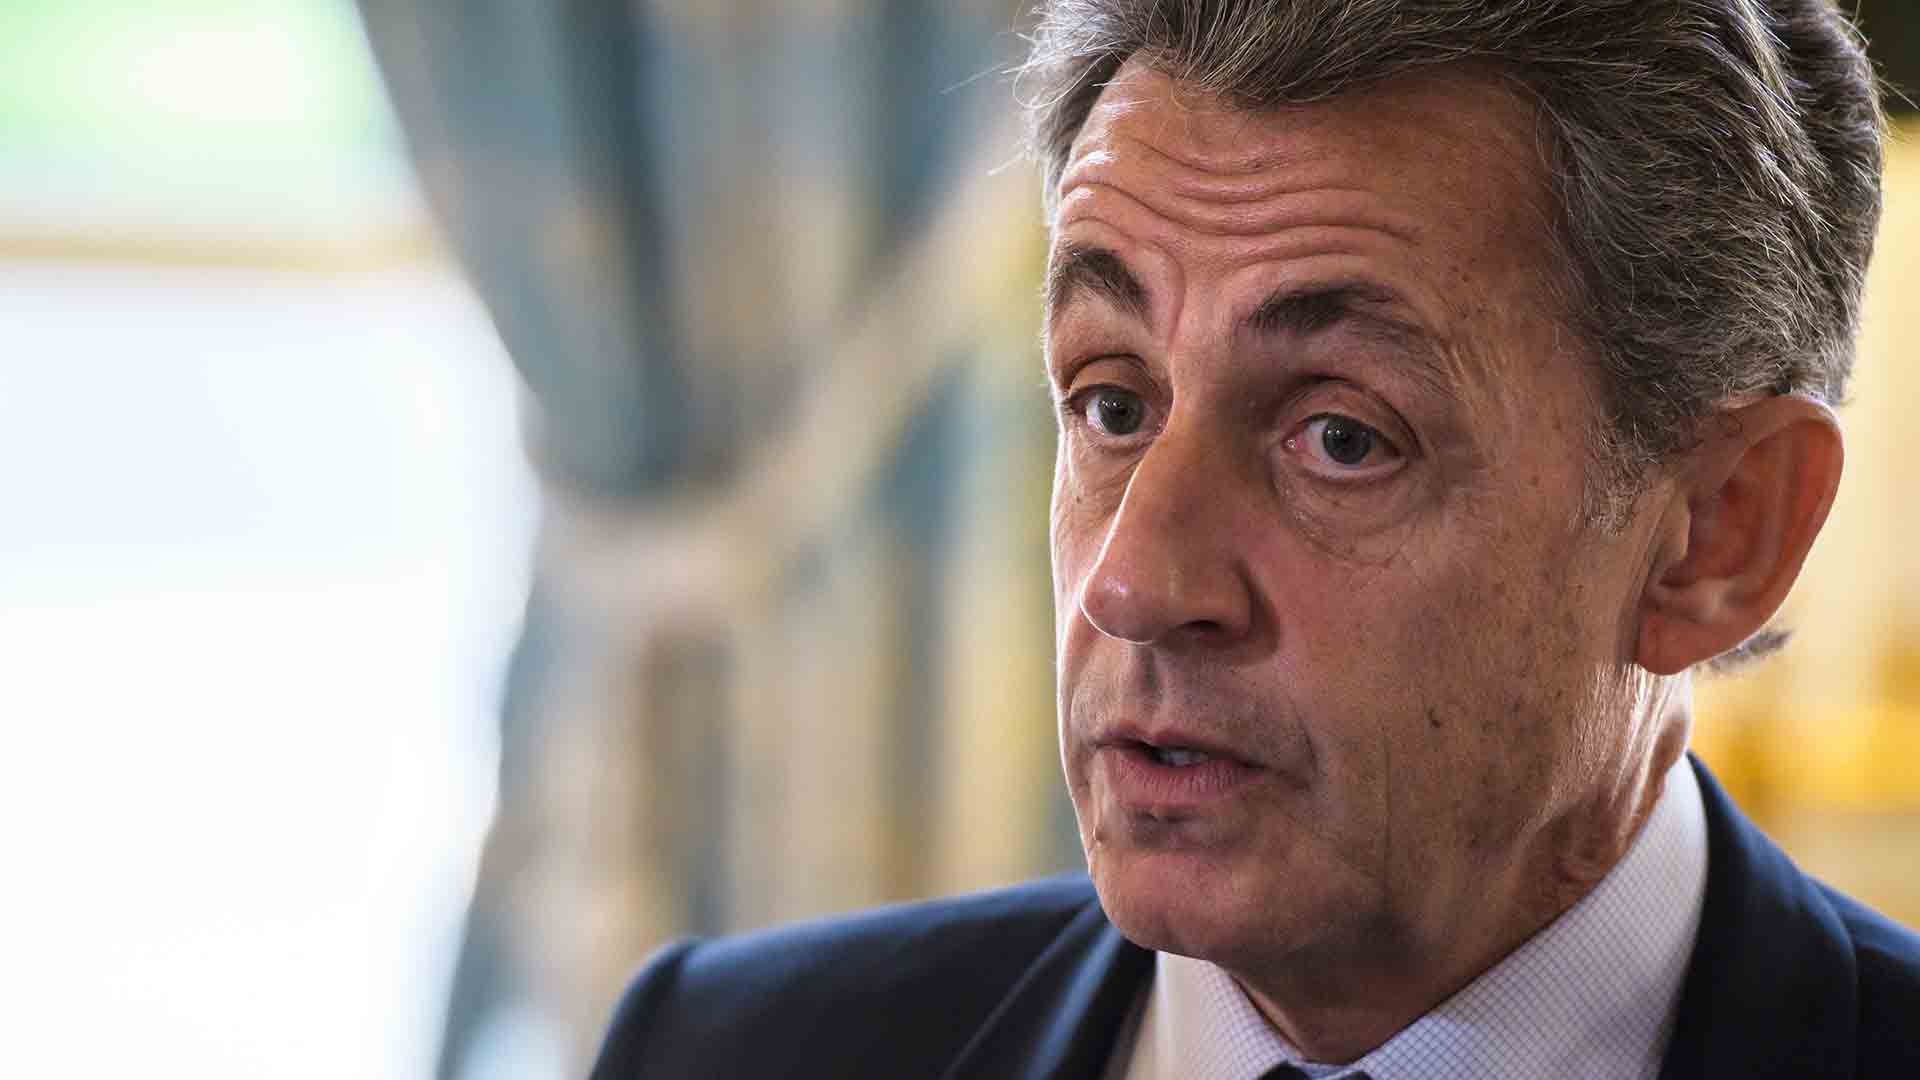 El abogado de Sarkozy recurrirá las medidas judiciales por considerarlas “humillantes”